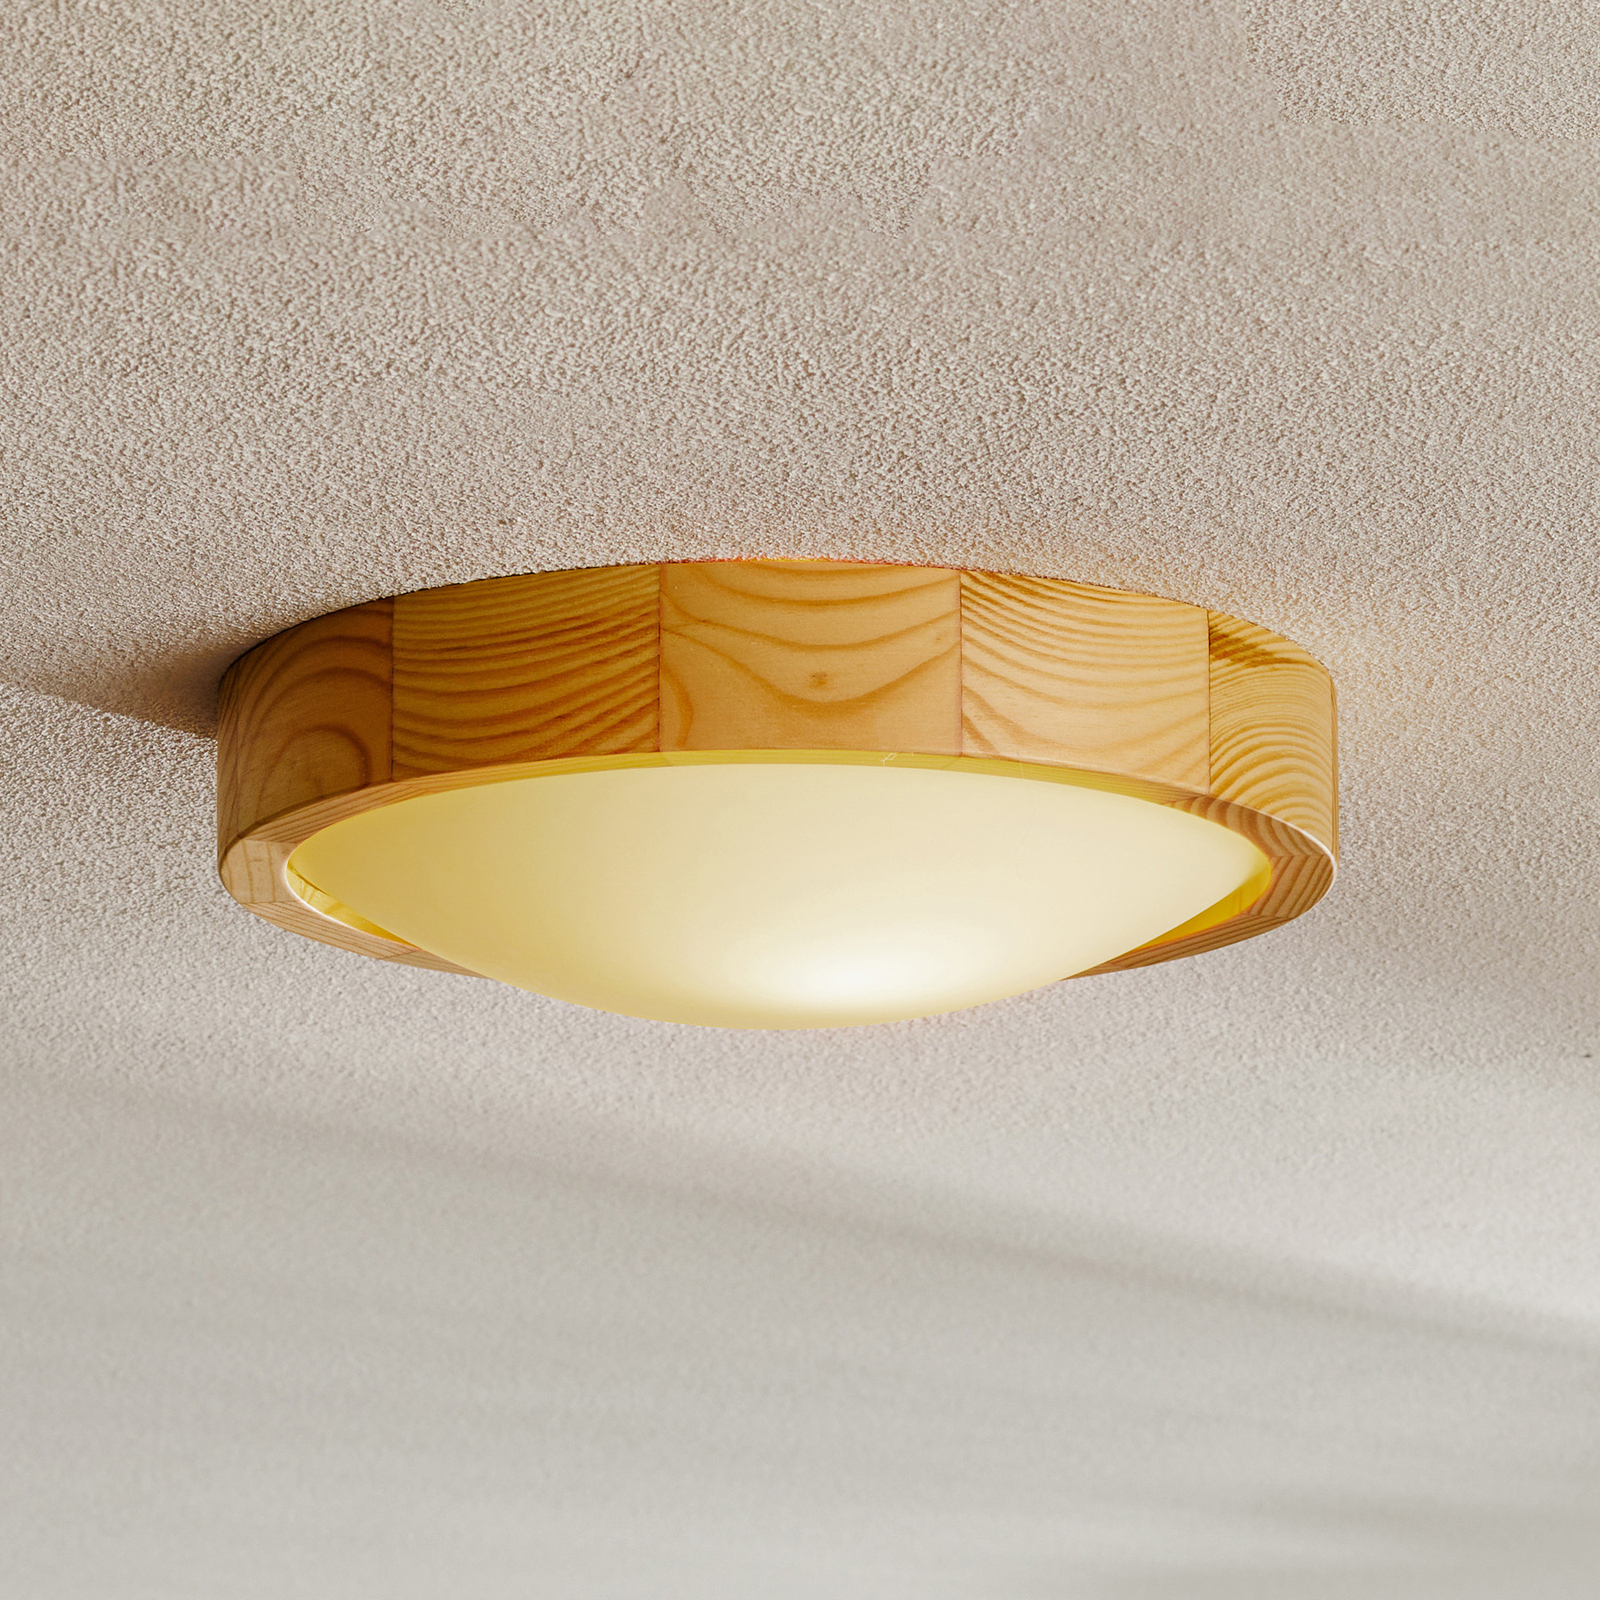 Zeus ceiling light made of wood, pine, Ø 27 cm